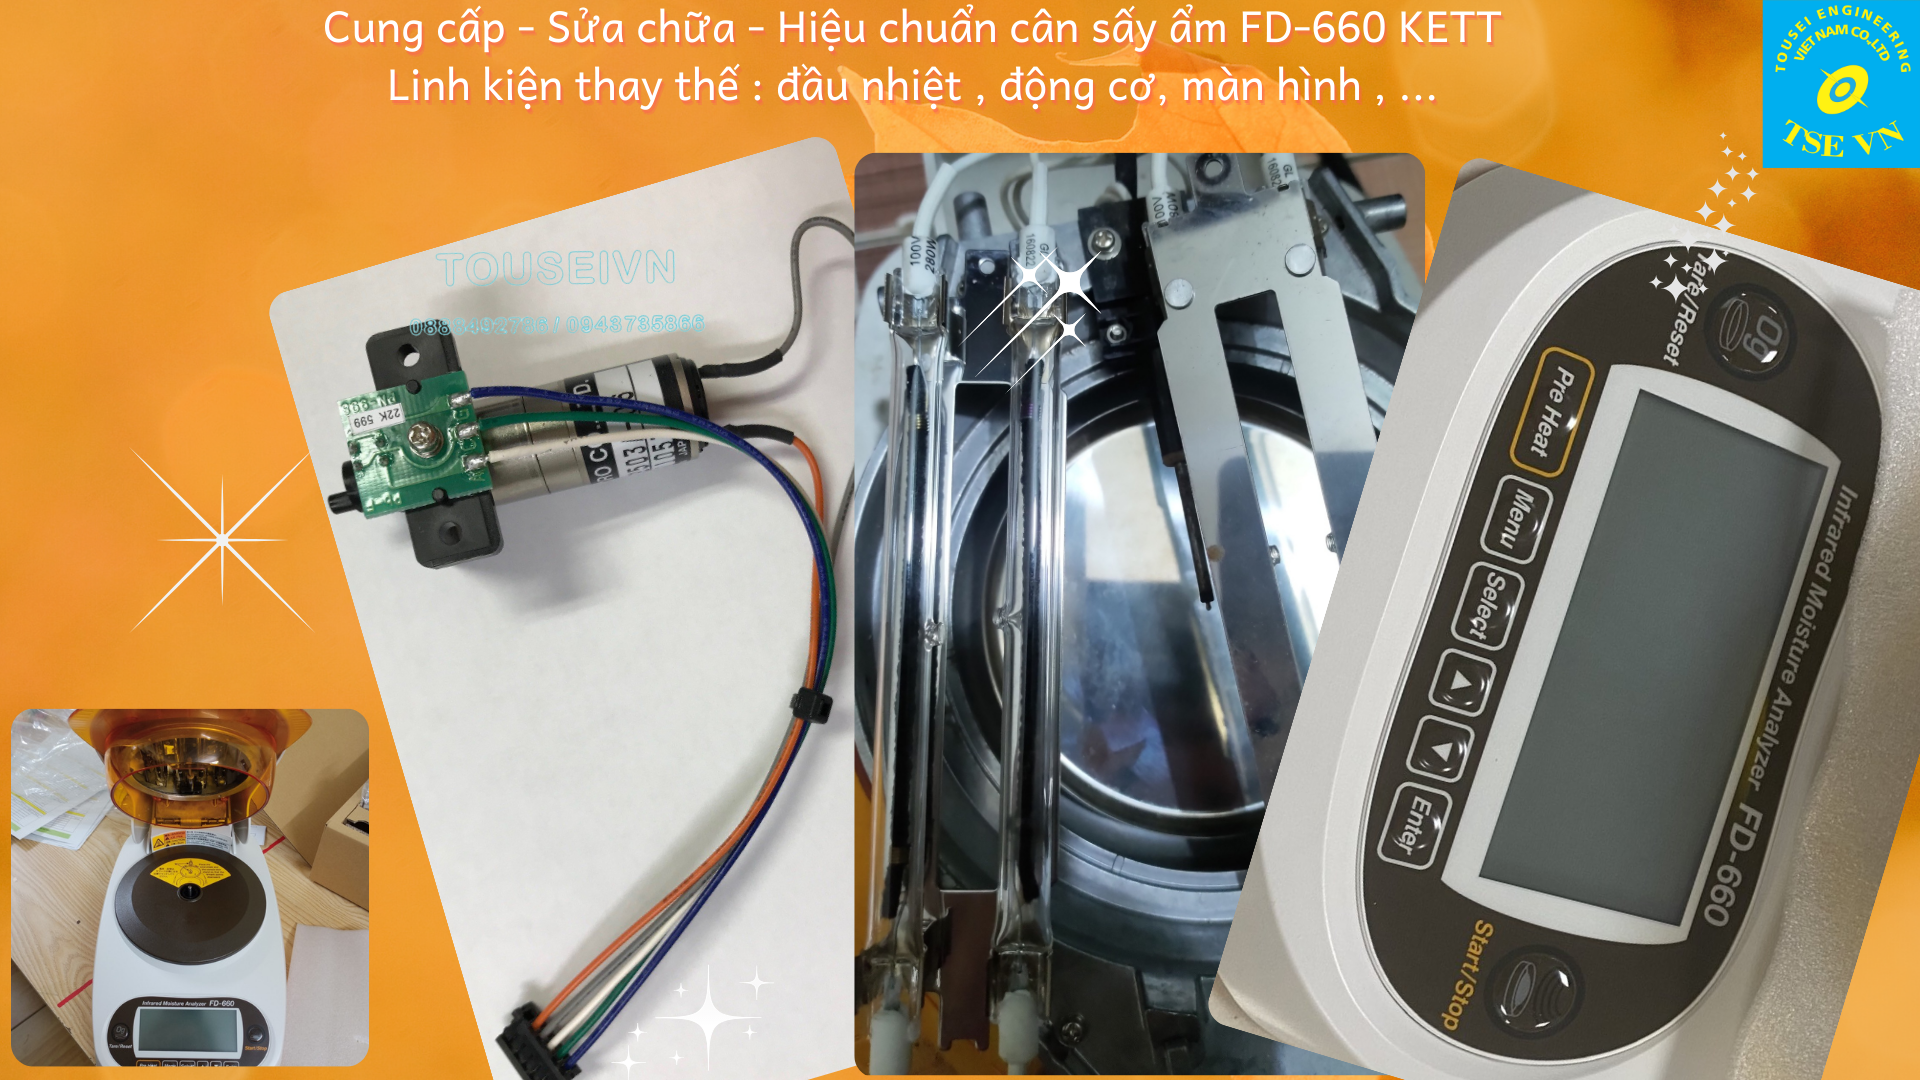 Sửa - Hiệu chuẩn - cung cấp linh kiện sửa chữa cân sấy ẩm FD-660 Kett ( thanh nhiệt , động cơ , màn hình ,... )